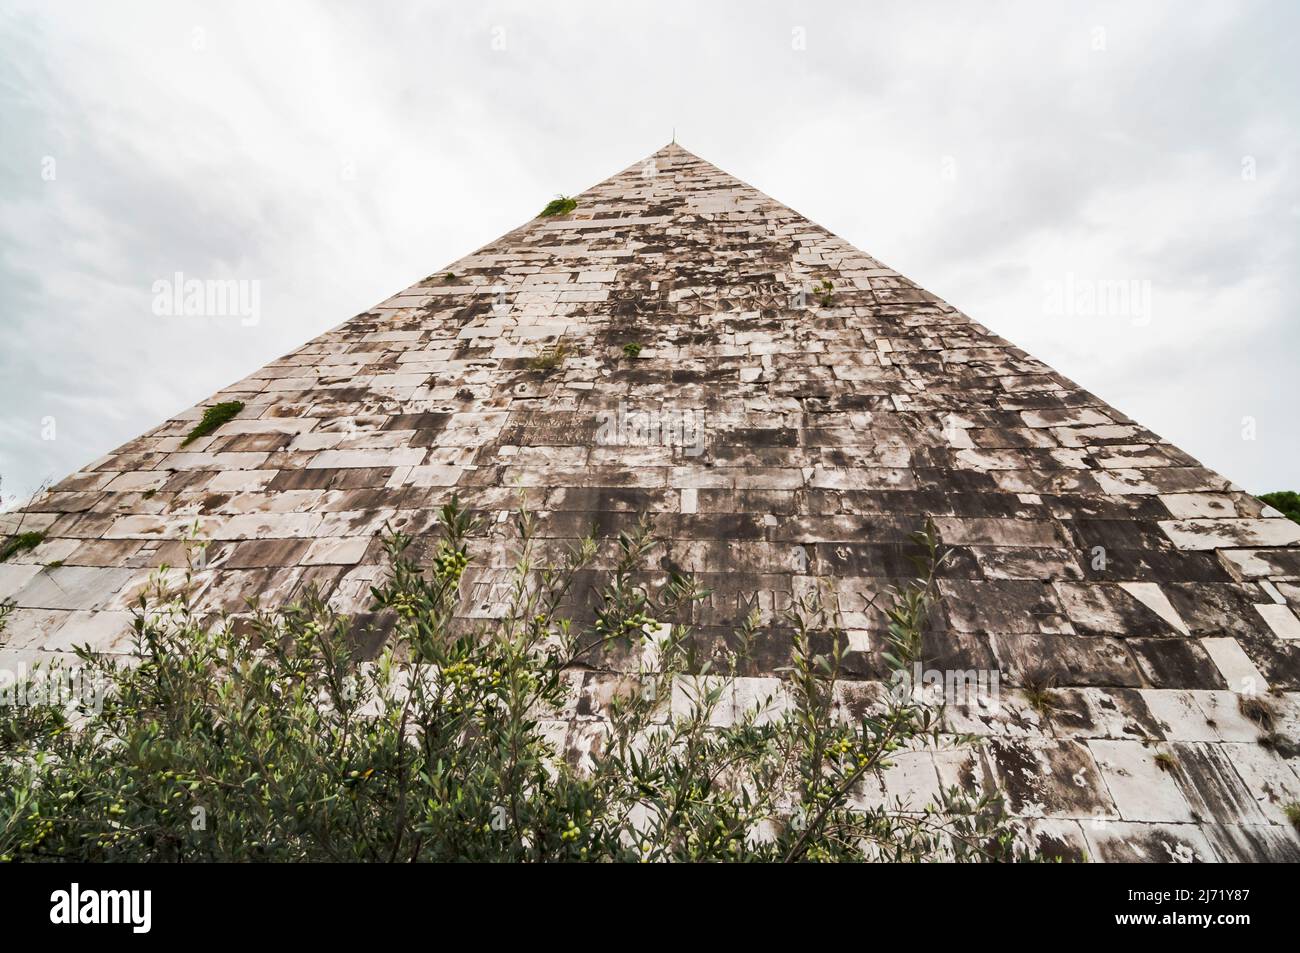 The Pyramid of Cestius Piramide di Caio Cestio or Piramide Cestia View from Piazzale Ostiense square. Rome, Lazio, Italy. Stock Photo